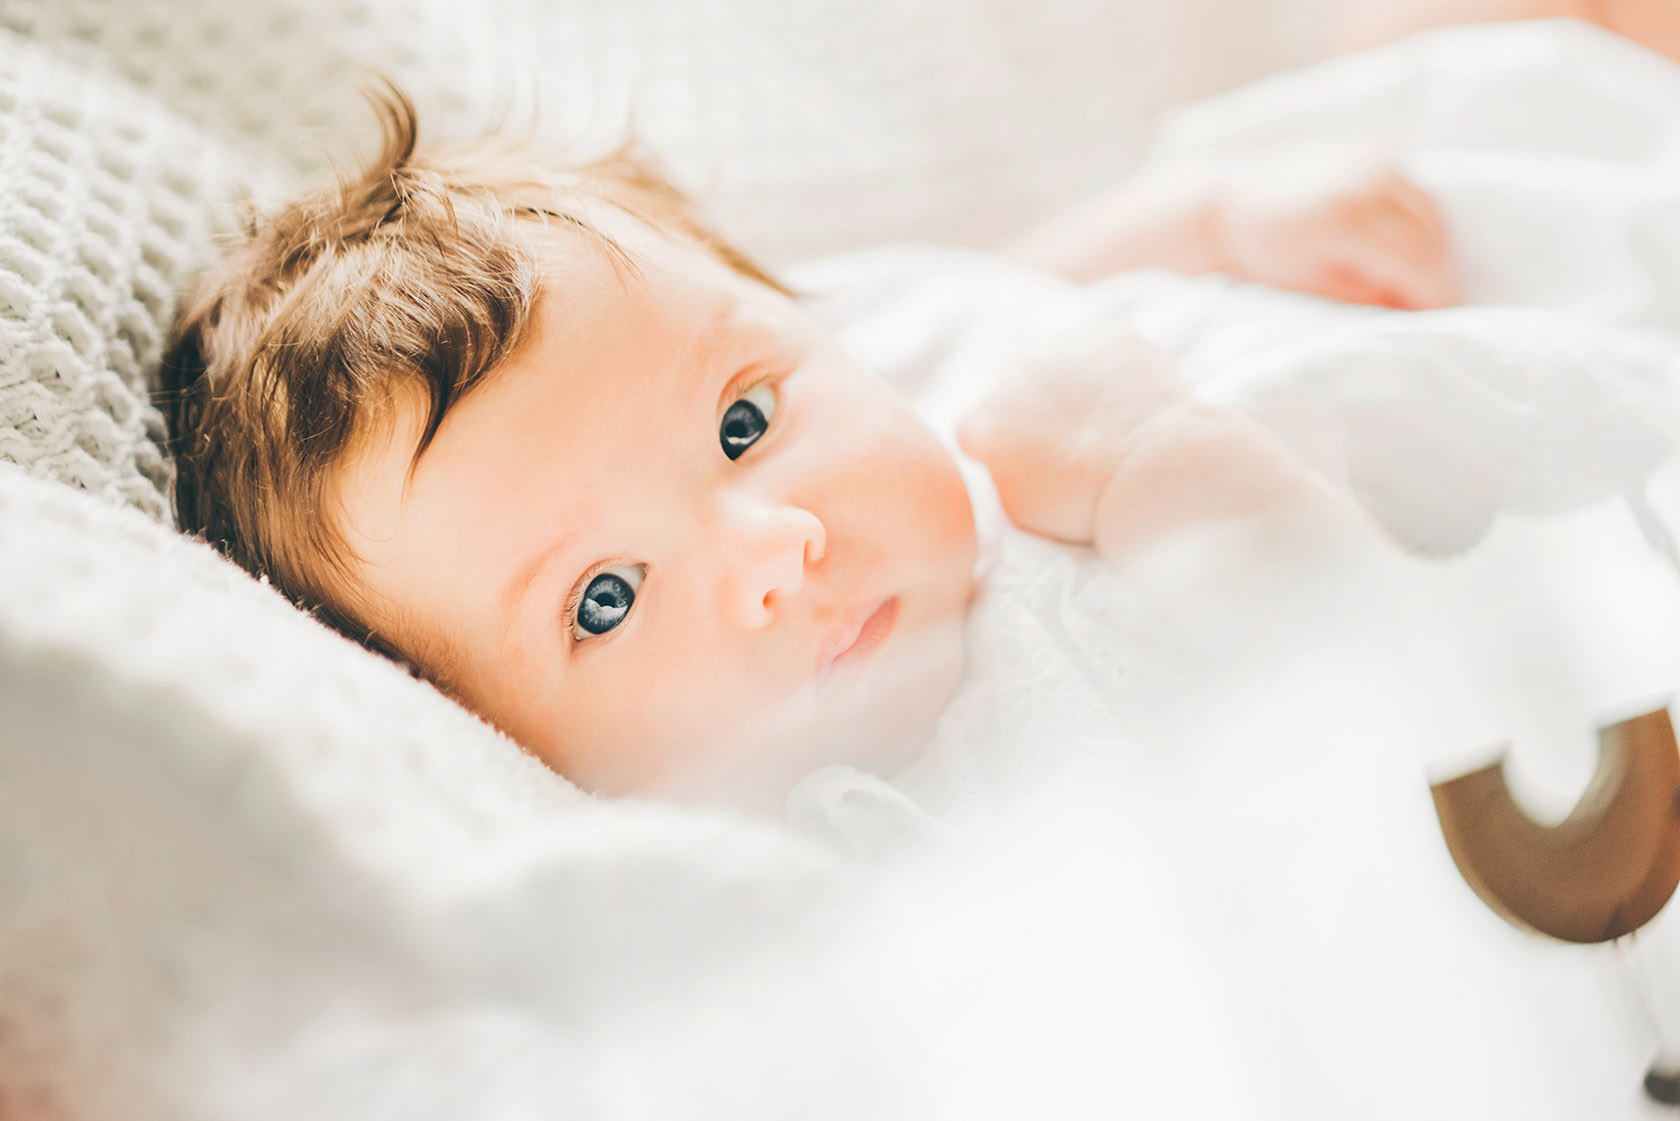 50 оттенков синего: почему у новорожденного кожа нездорового оттенка | PARENTS